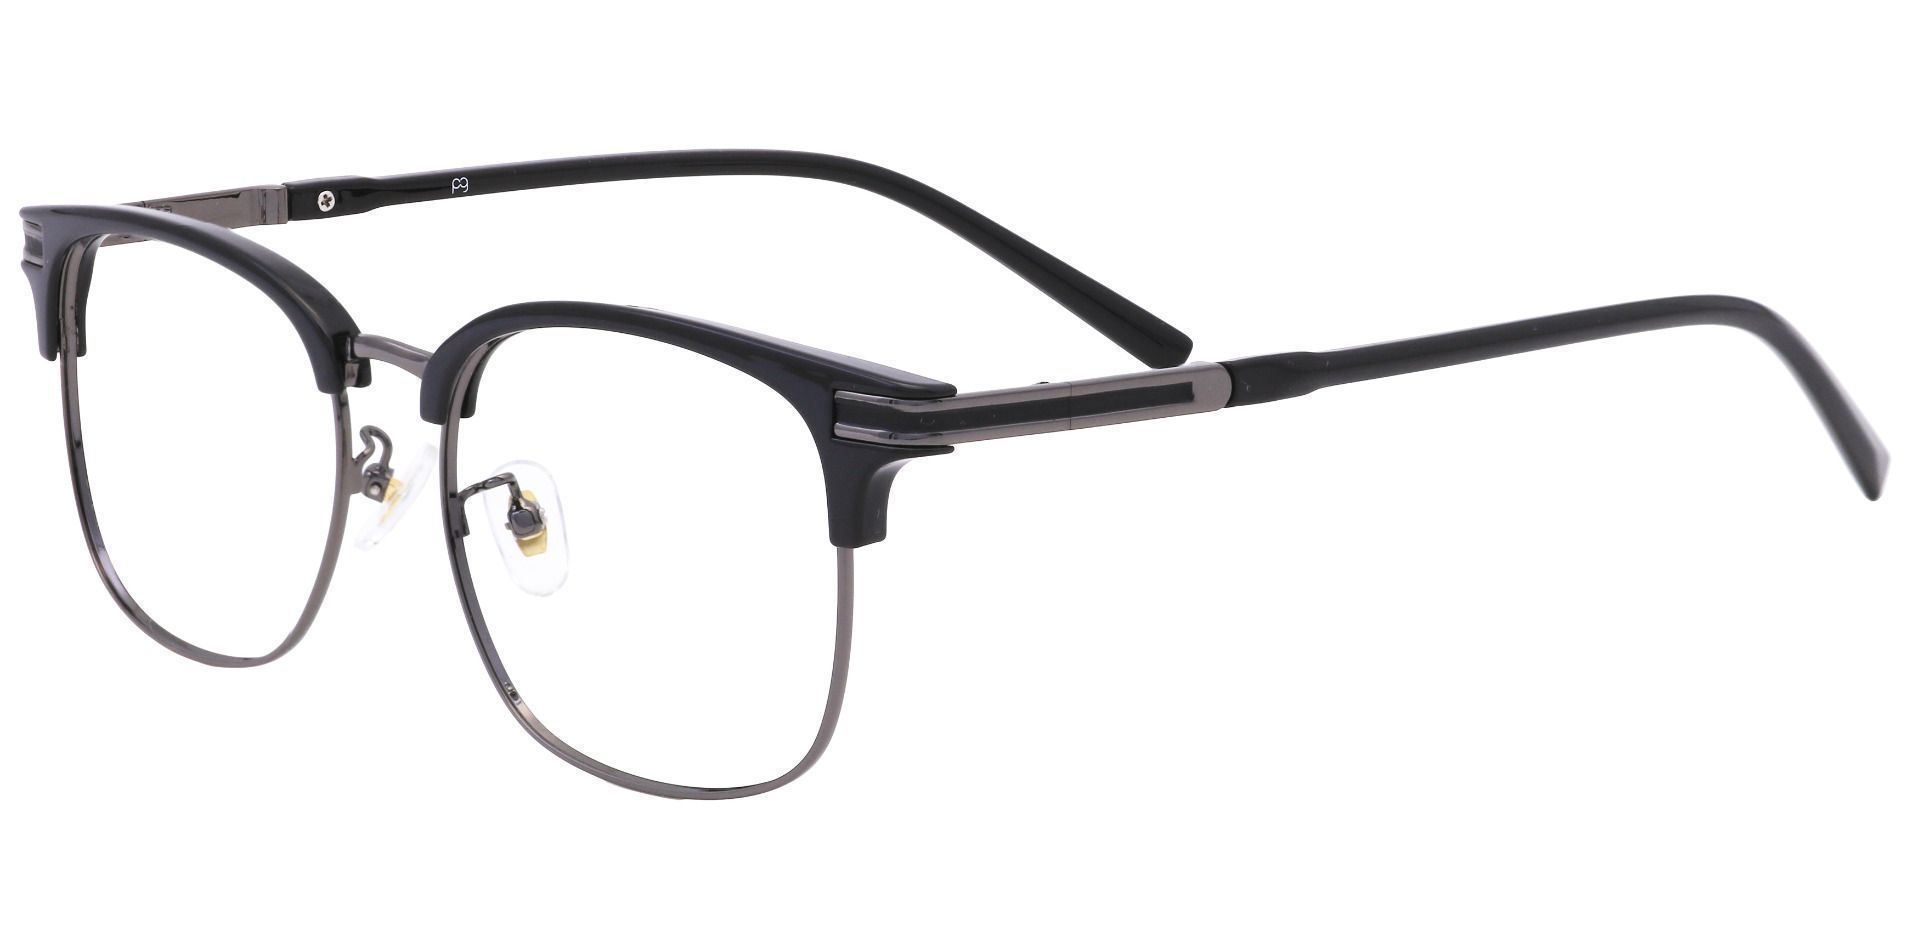 Cafe Browline Eyeglasses Frame - Black